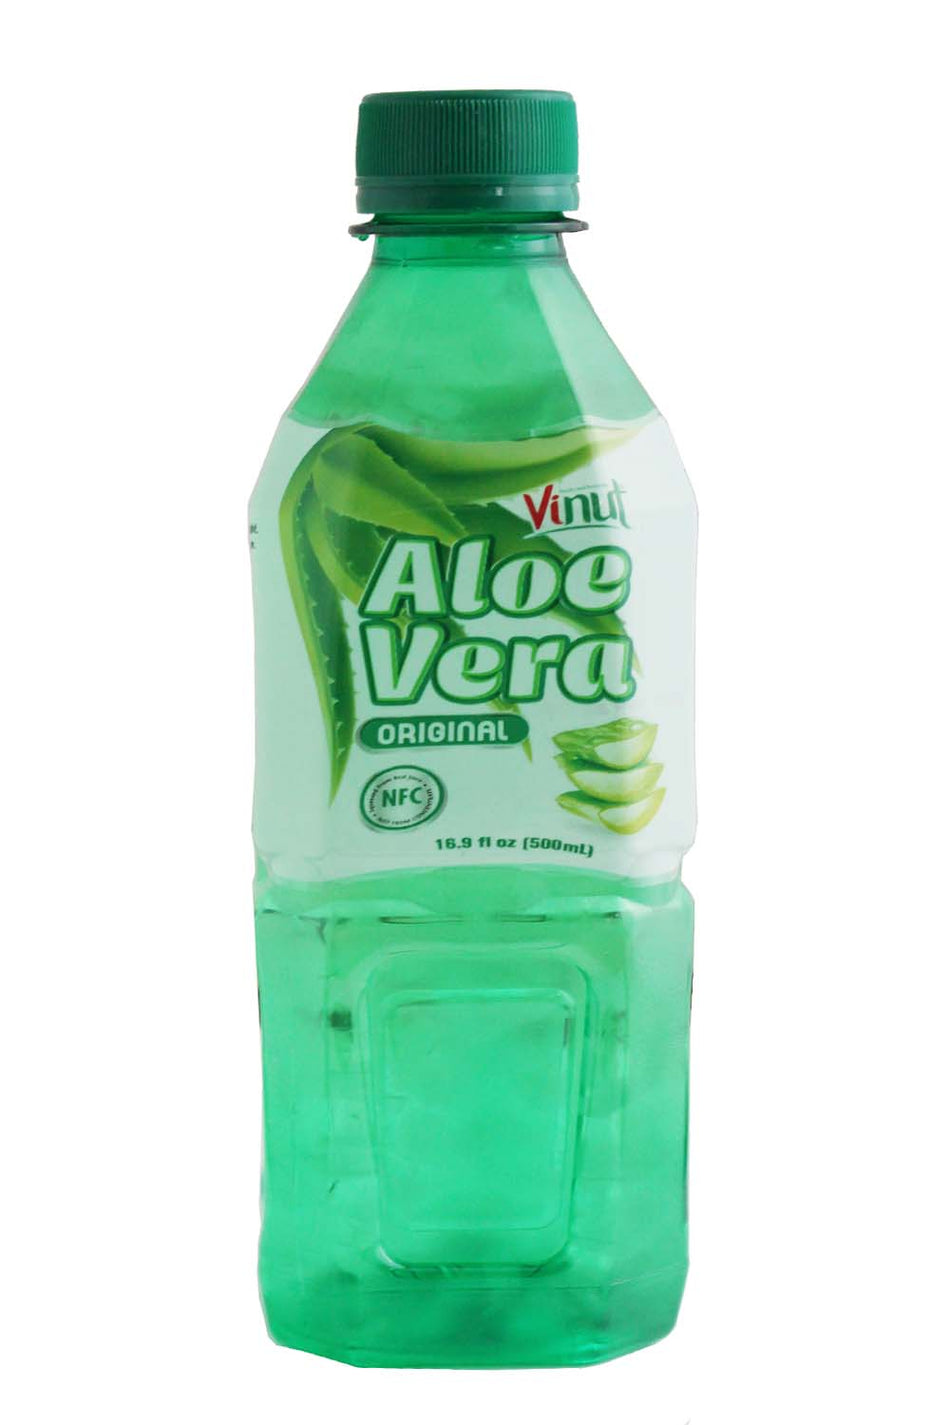 Vinut Aloe Vera  Drink